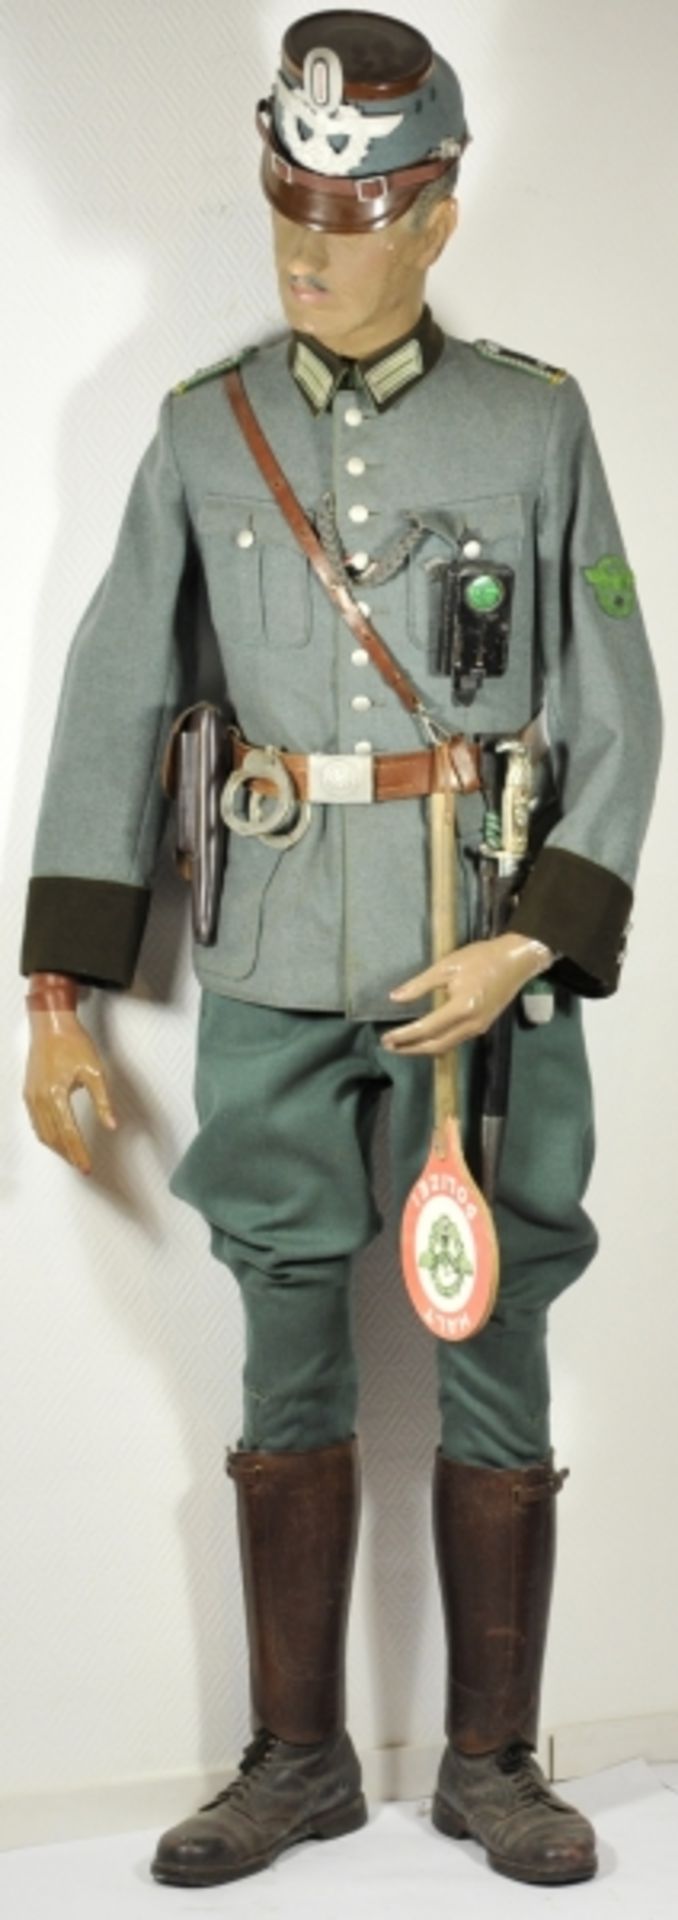 Uniformensemble eines Oberwachtmeister der Gendarmerie.Feldbluse mit vernähtem Band zum KVK II. - Image 2 of 3